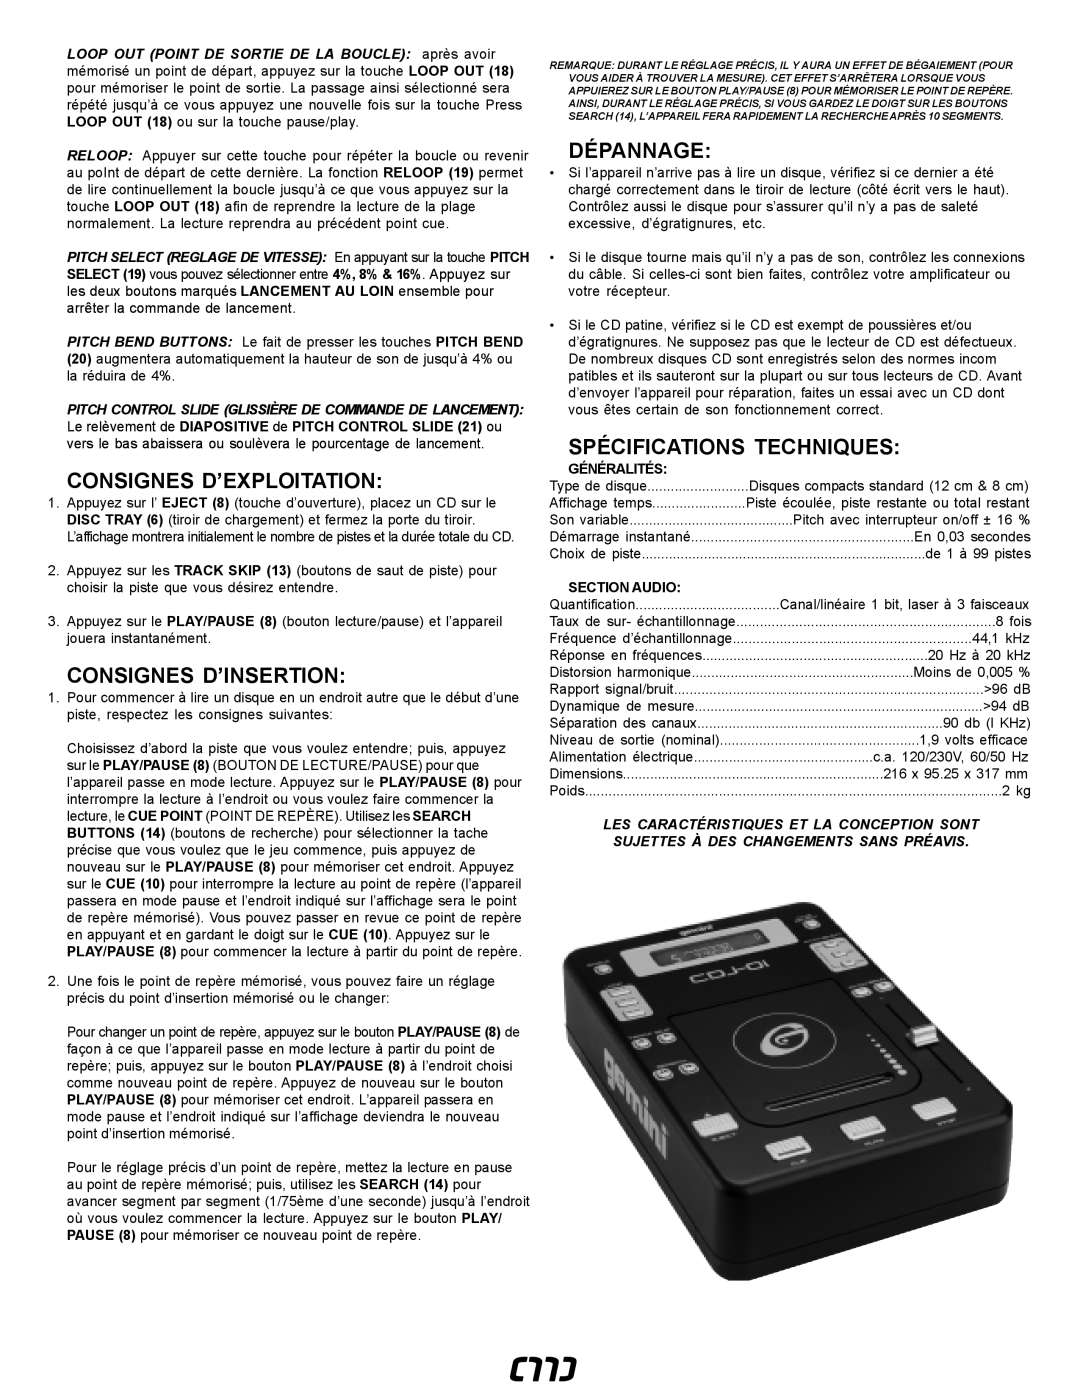 Gemini CDJ-0I manual Consignes D’Exploitation, Consignes D’Insertion, Dépannage, Spécifications Techniques, Généralités 